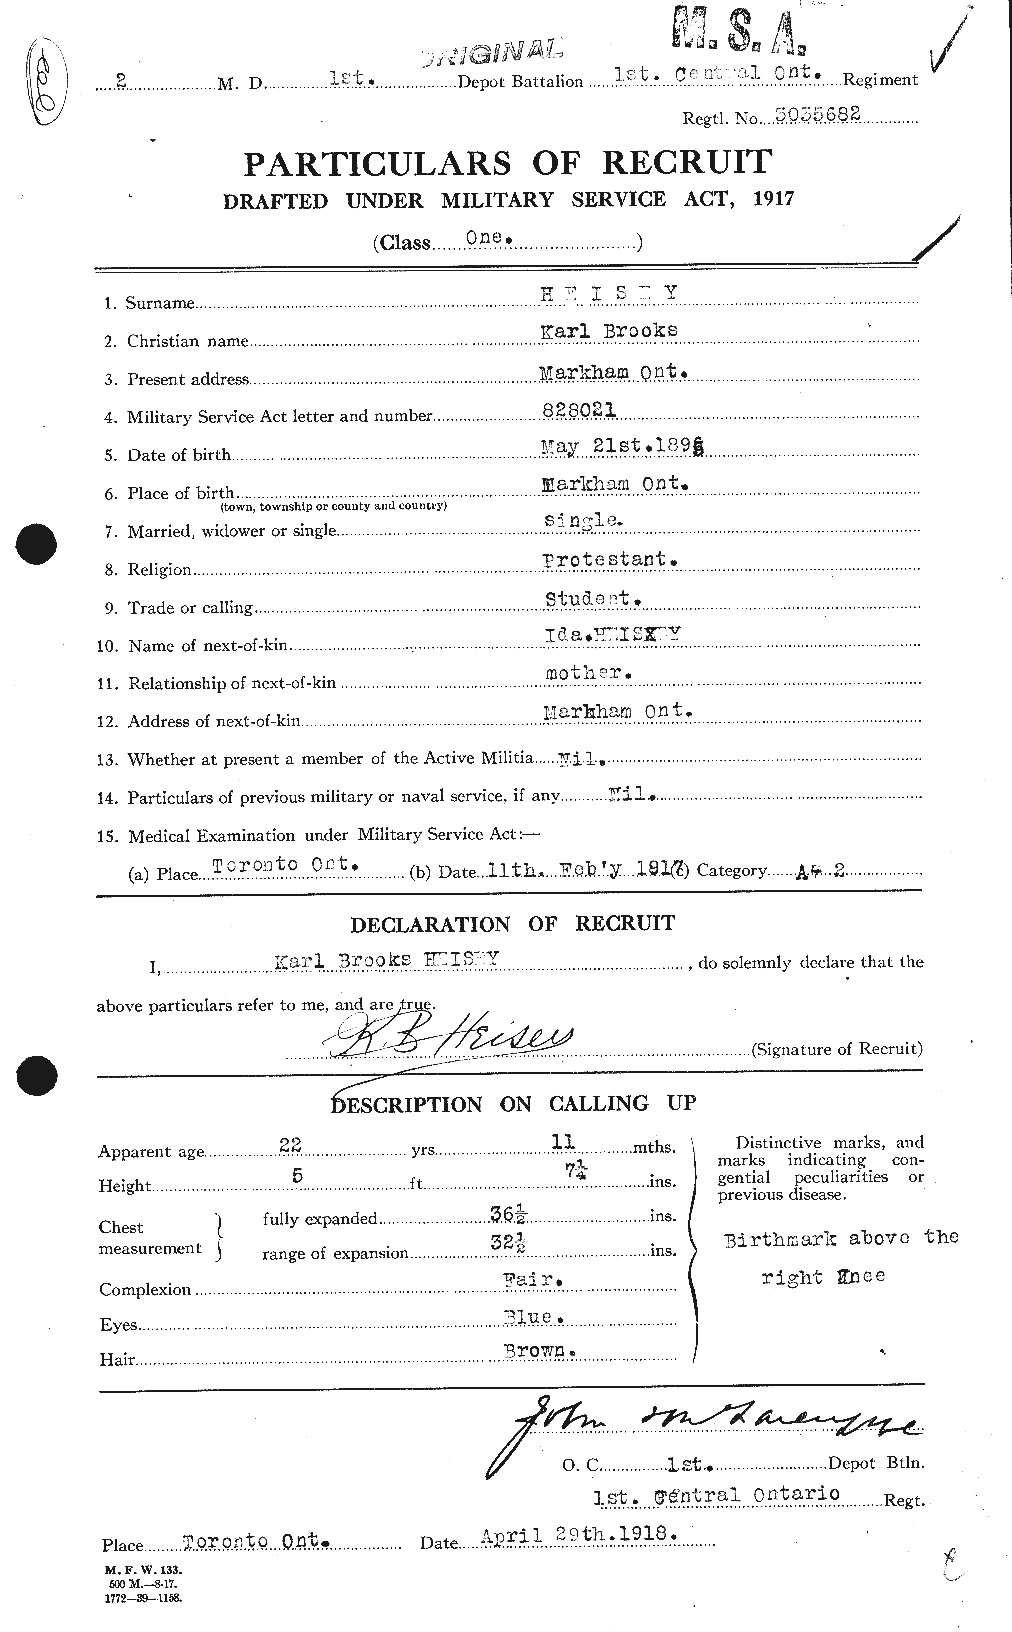 Dossiers du Personnel de la Première Guerre mondiale - CEC 389348a